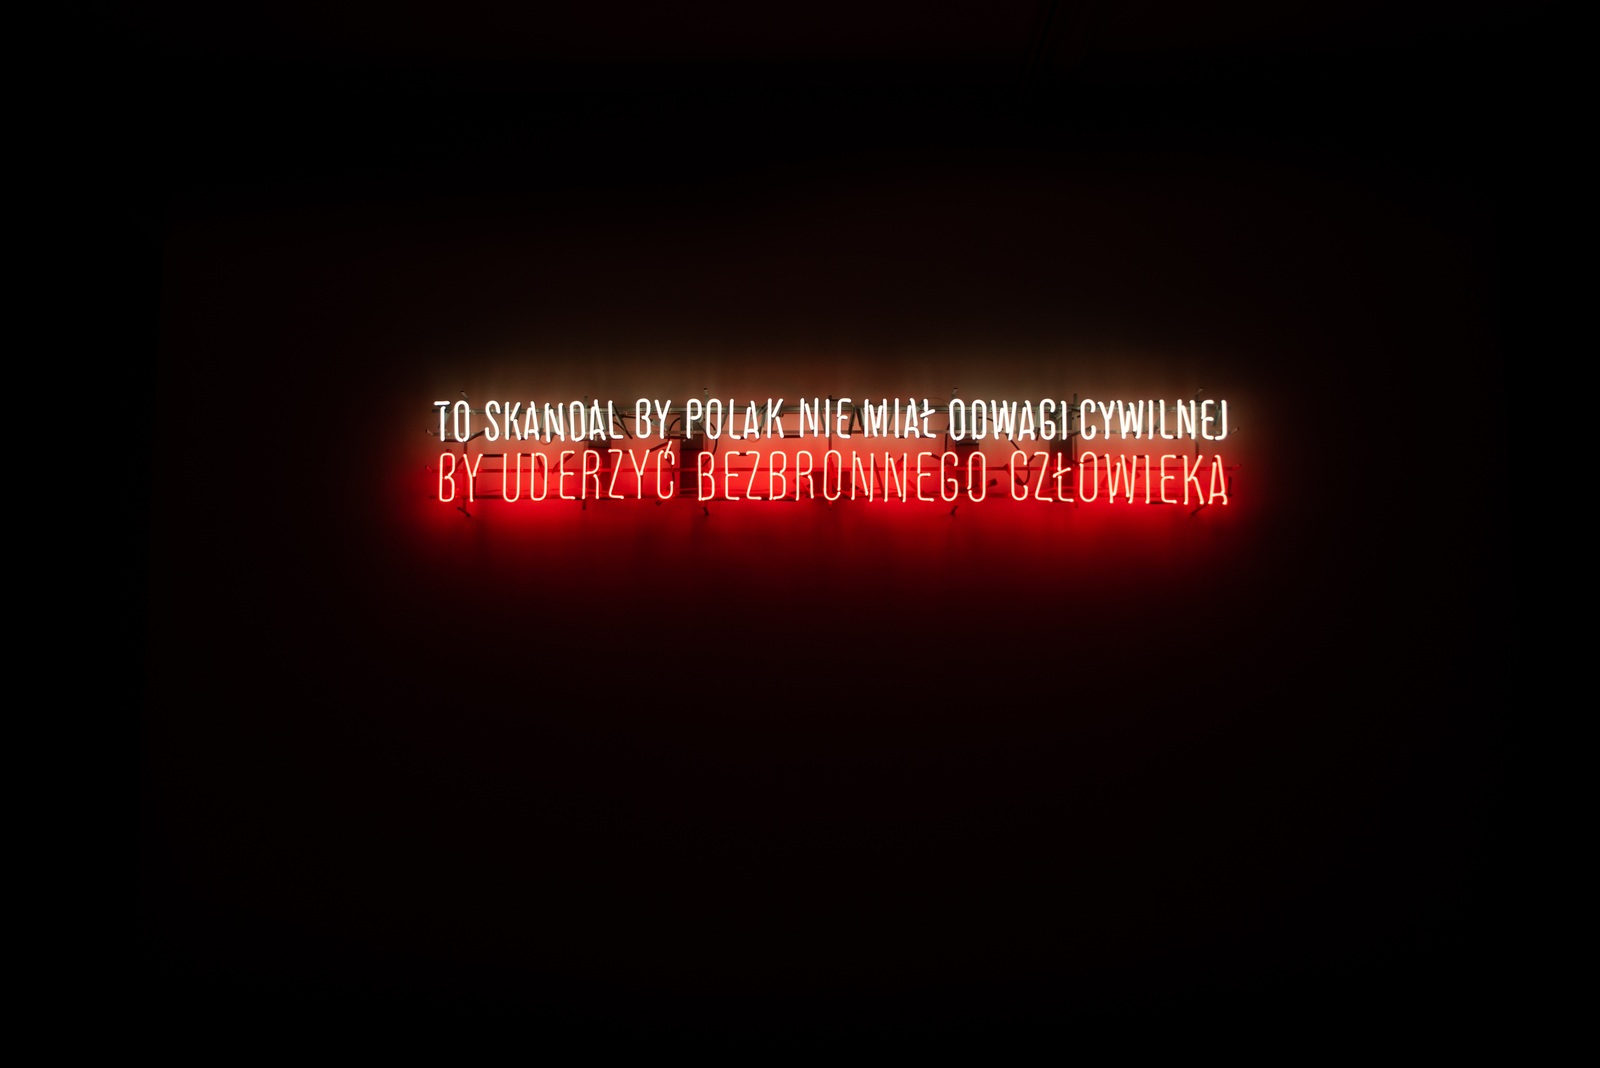 Hubert Czerepok, "To skandal by Polak nie miał odwagi cywilnej by uderzyć bezbronnego człowieka", 2011, neon